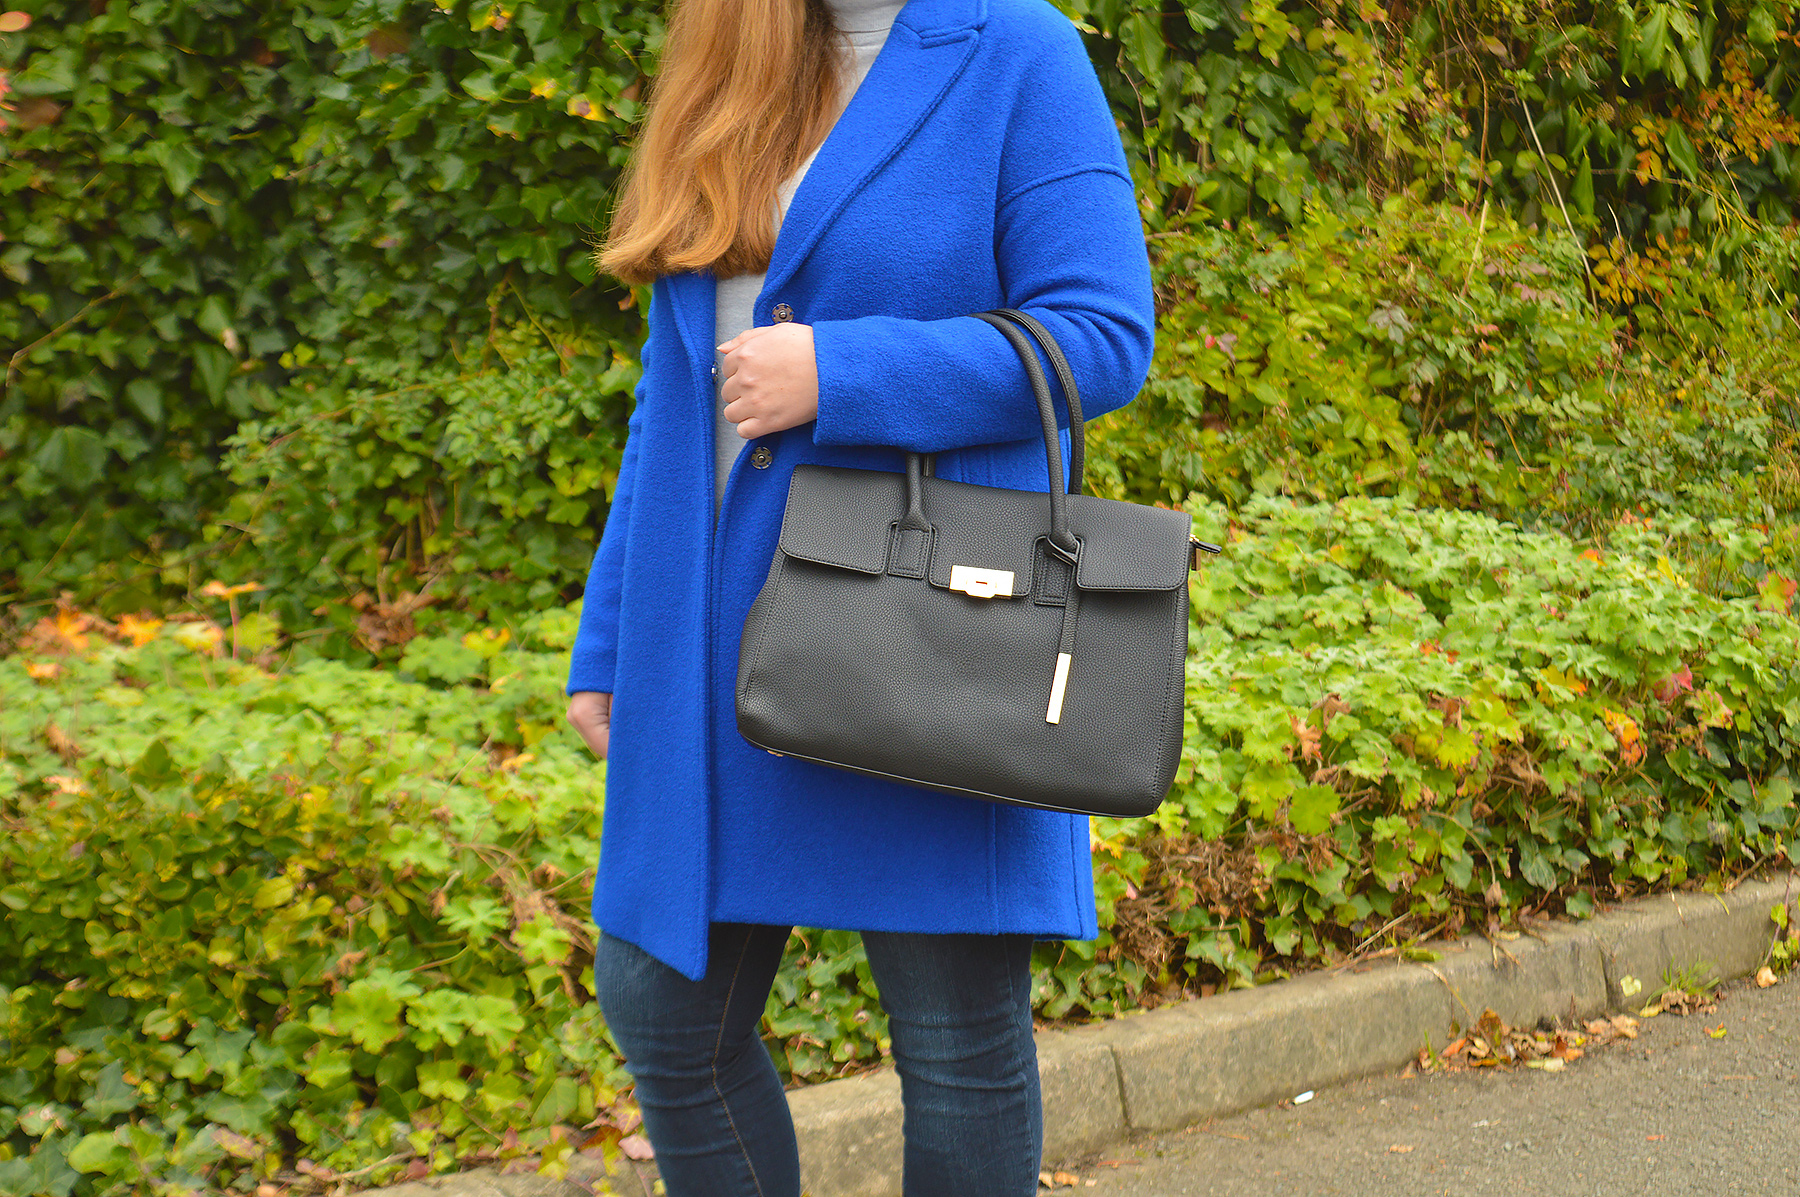 Black handbag and blue coat